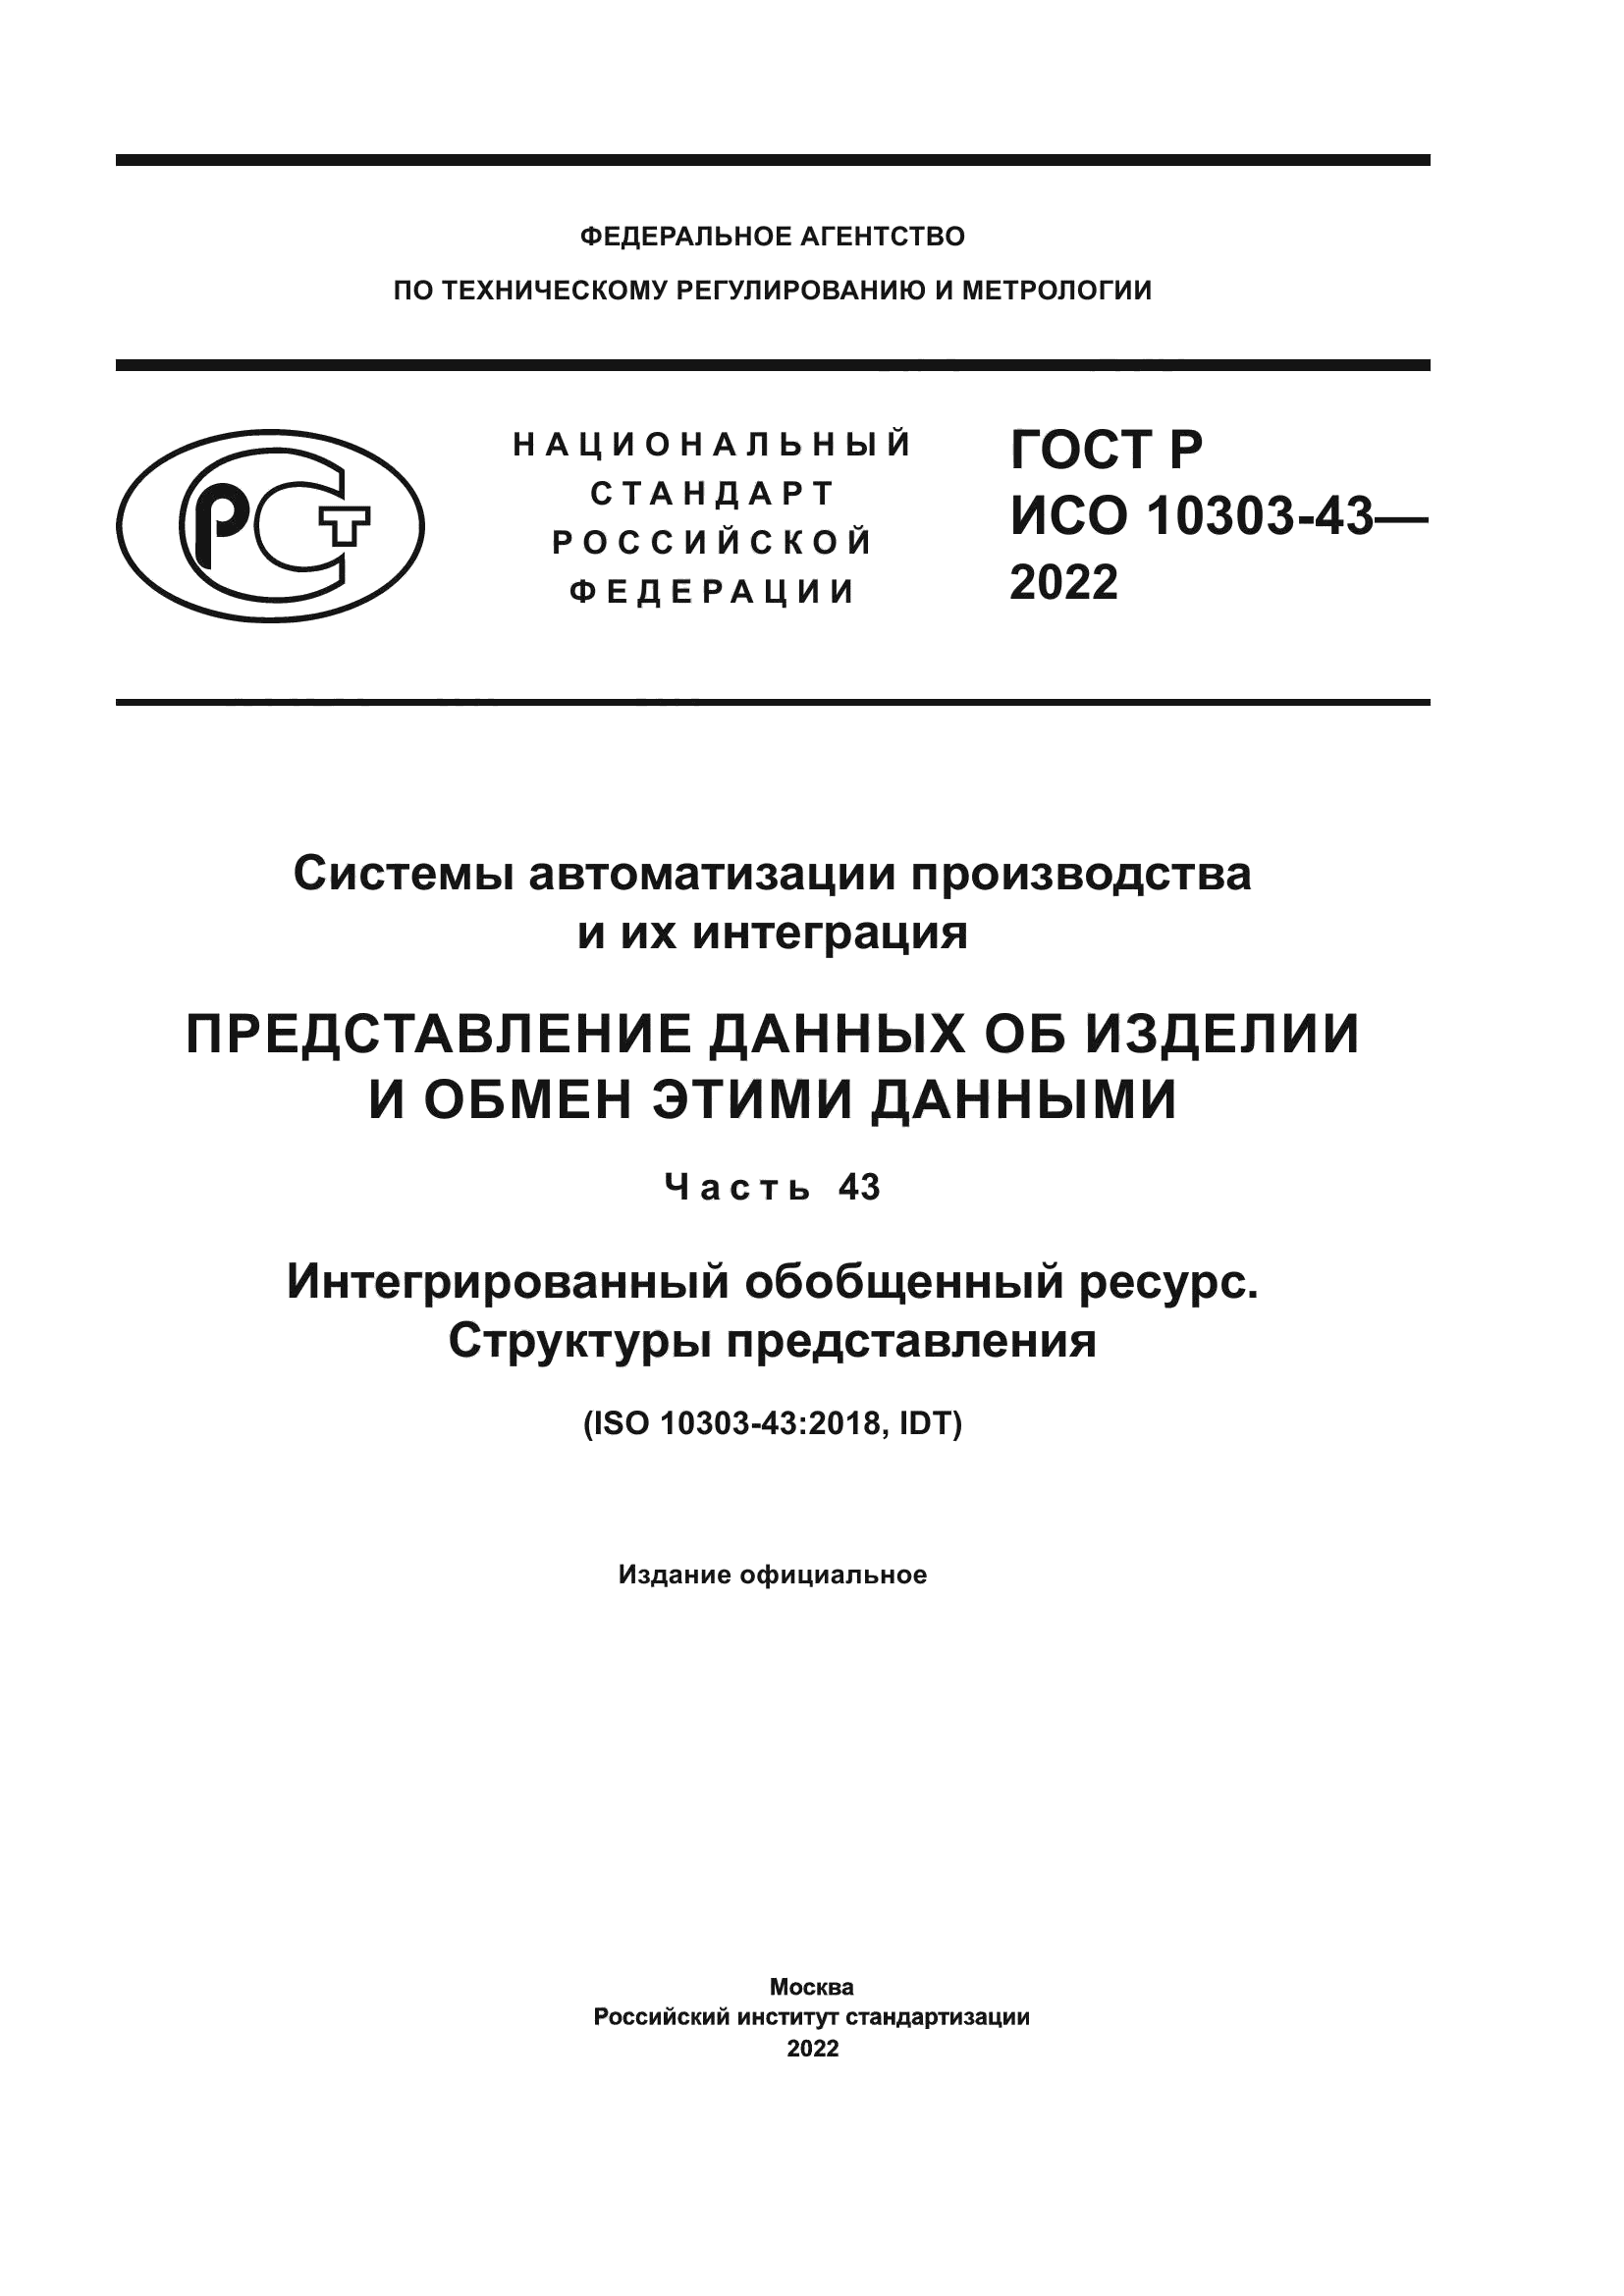 ГОСТ Р ИСО 10303-43-2022